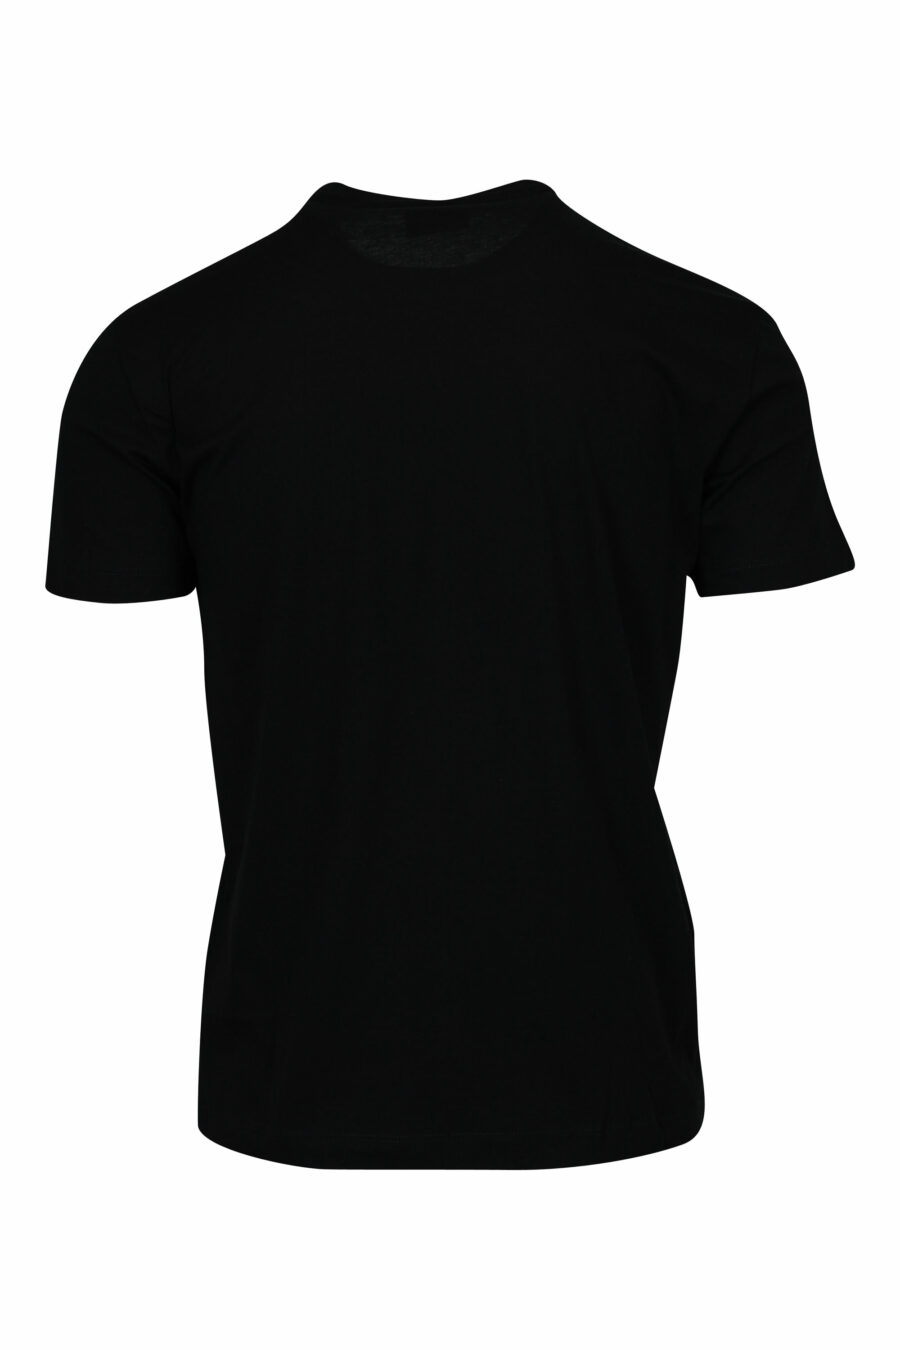 Schwarzes T-Shirt mit schwarzem "lux identity"-Minilogo auf Goldplatte - 8058947471980 1